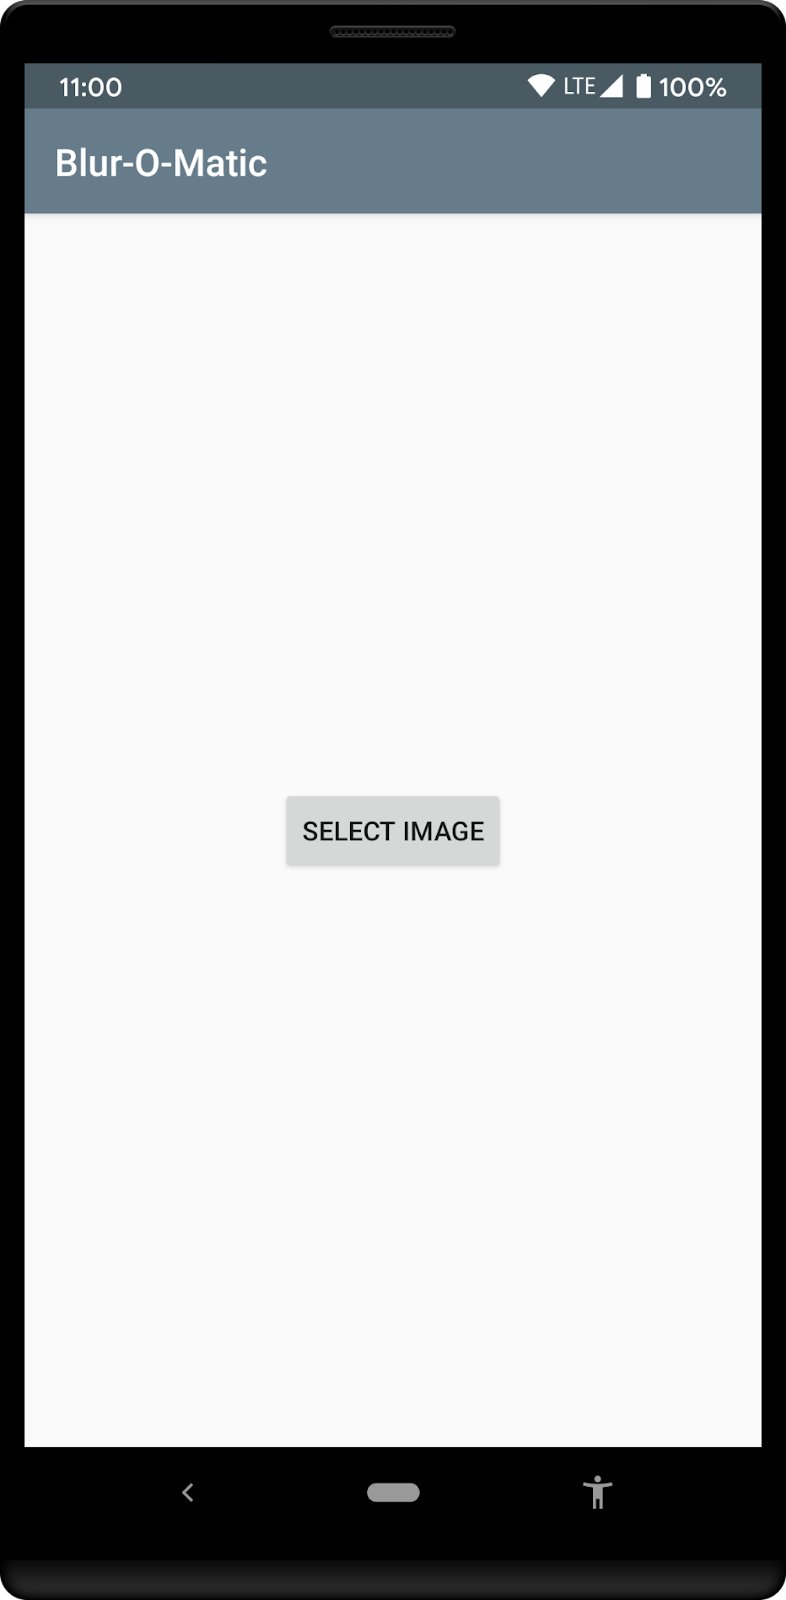 Pantalla de inicio de la app que le solicita al usuario que seleccione una imagen de la galería de fotos.